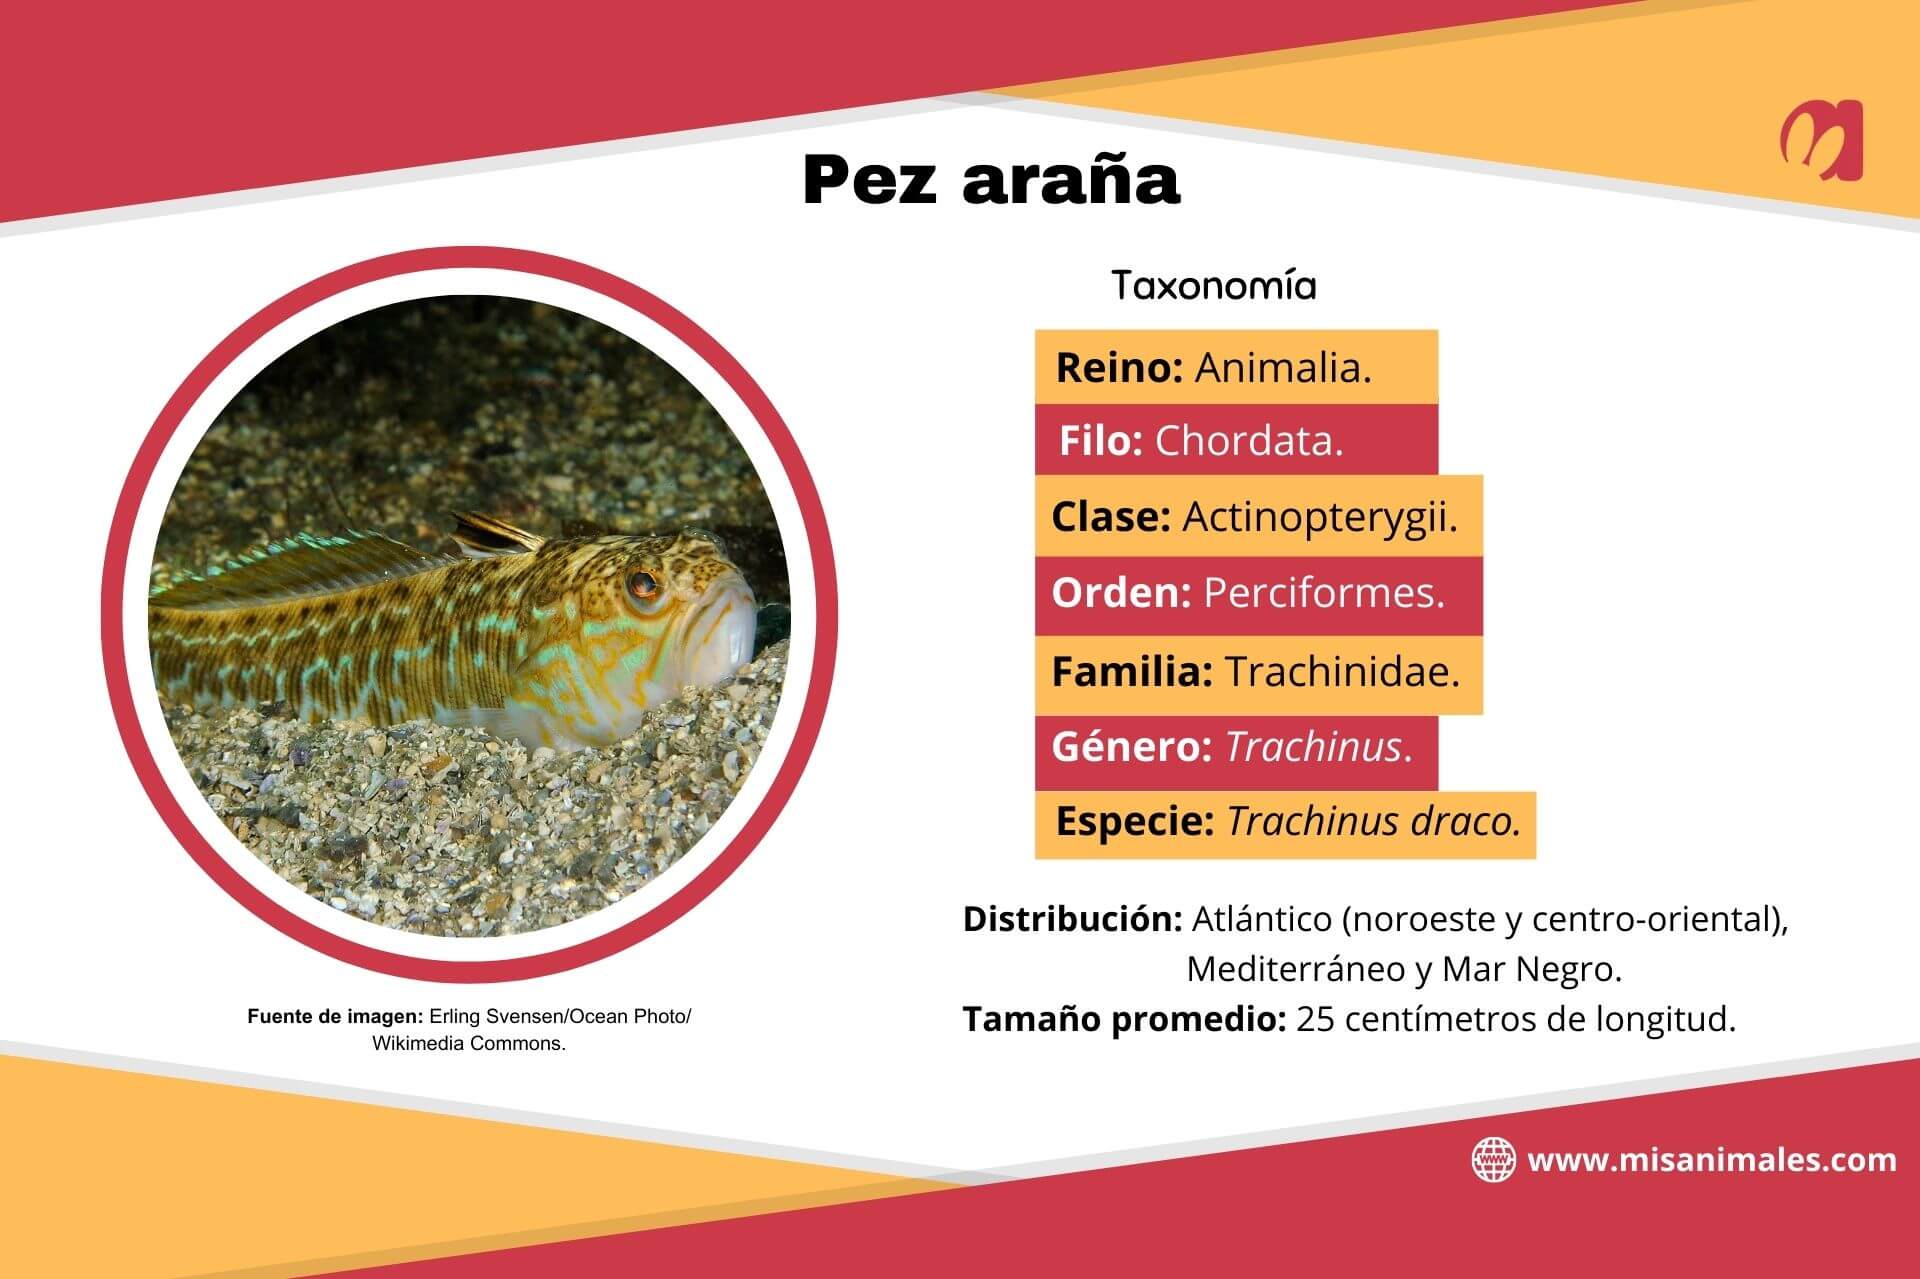 Ficha descriptiva, con imagen, sobre la taxonomía, la distribución y el tamaño promedio del pez araña (Trachinus draco). 